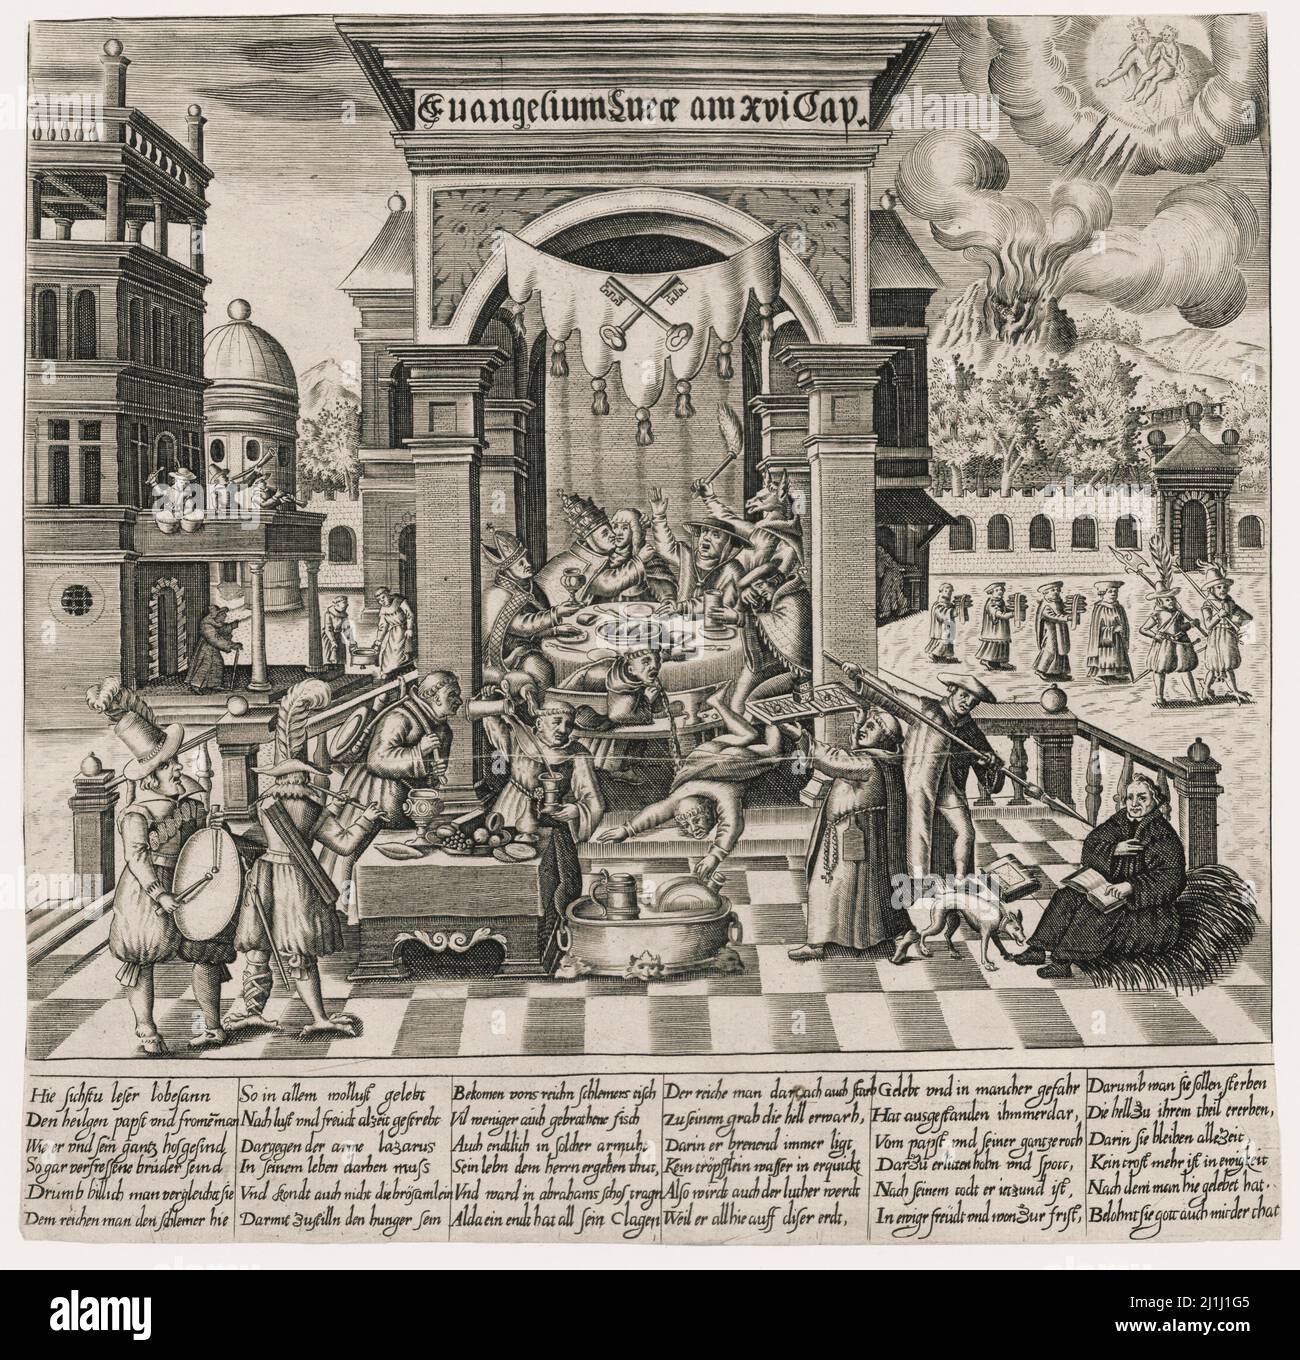 Gravure sarcastique protestante anti-catholique : l'Evangile de Luc au 16th siècle. 1570 l'Evangile selon Luc, appelé aussi l'Evangile de Luk Banque D'Images